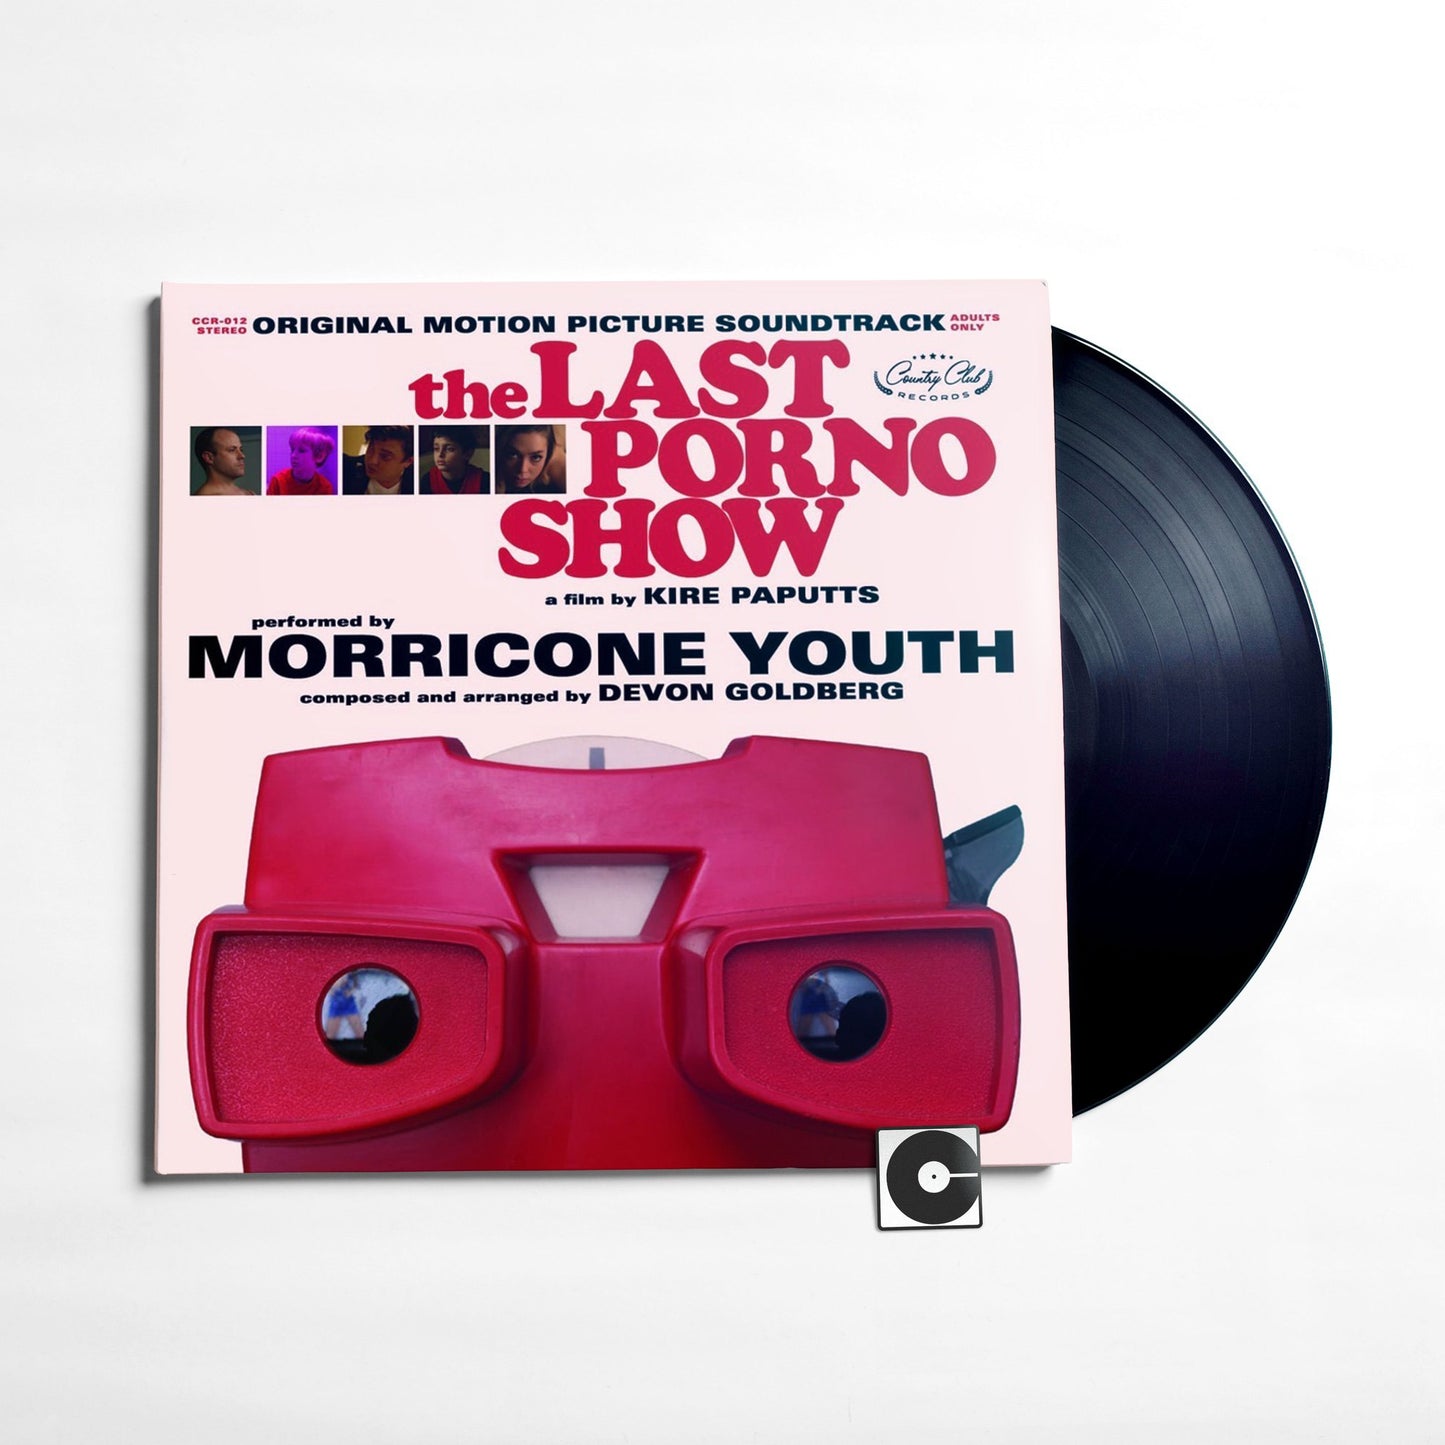 Morricone Youth And Devon Goldberg - "The Last Porno Show: Original Soundtrack"